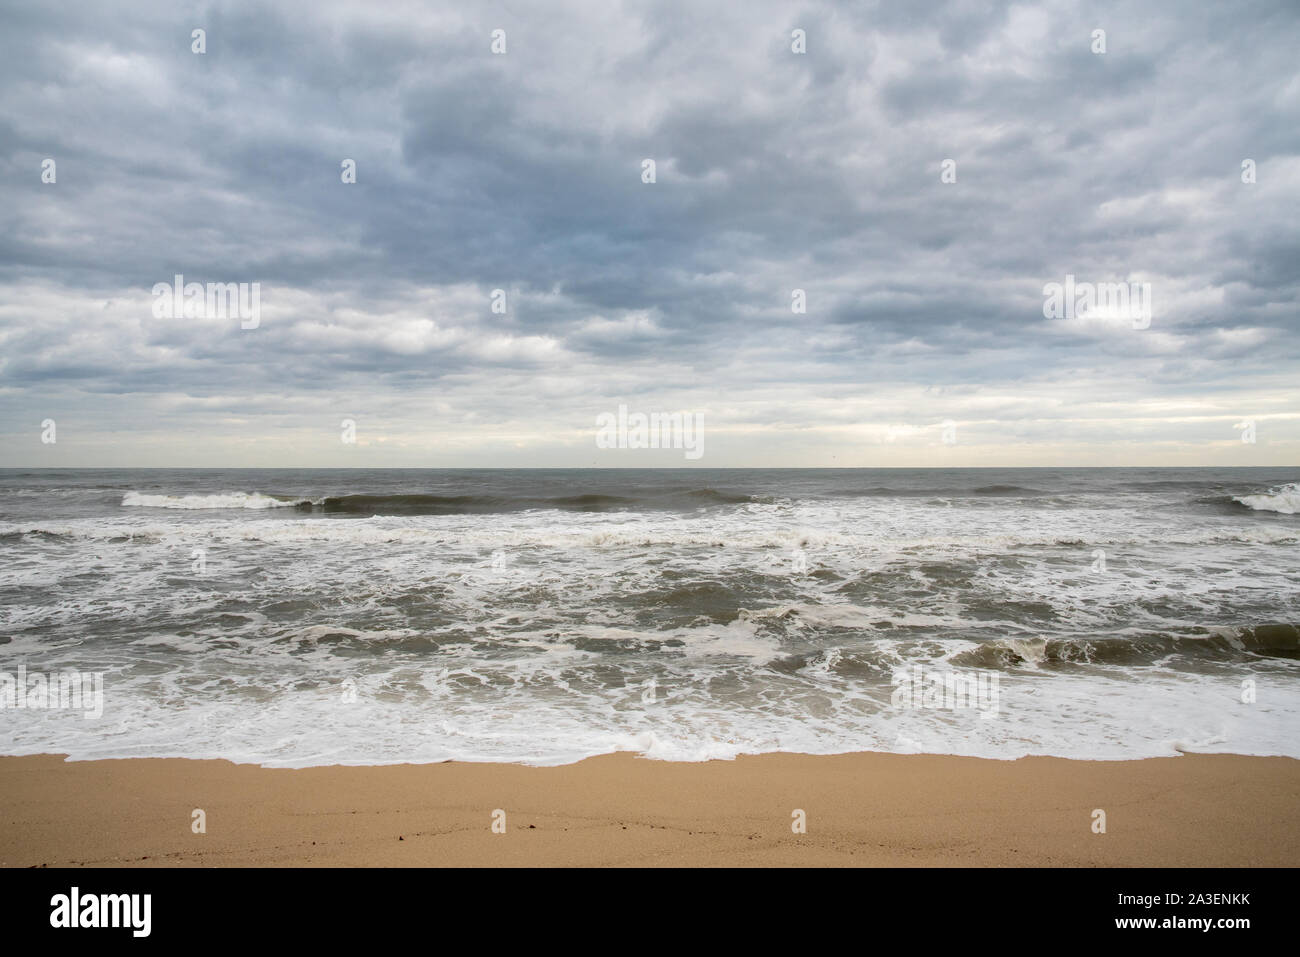 Ein seashore Szene, in der die hohen Wellen mit Wetter und starke Winde kommen. Südkorea Donghae das Meer. Stockfoto